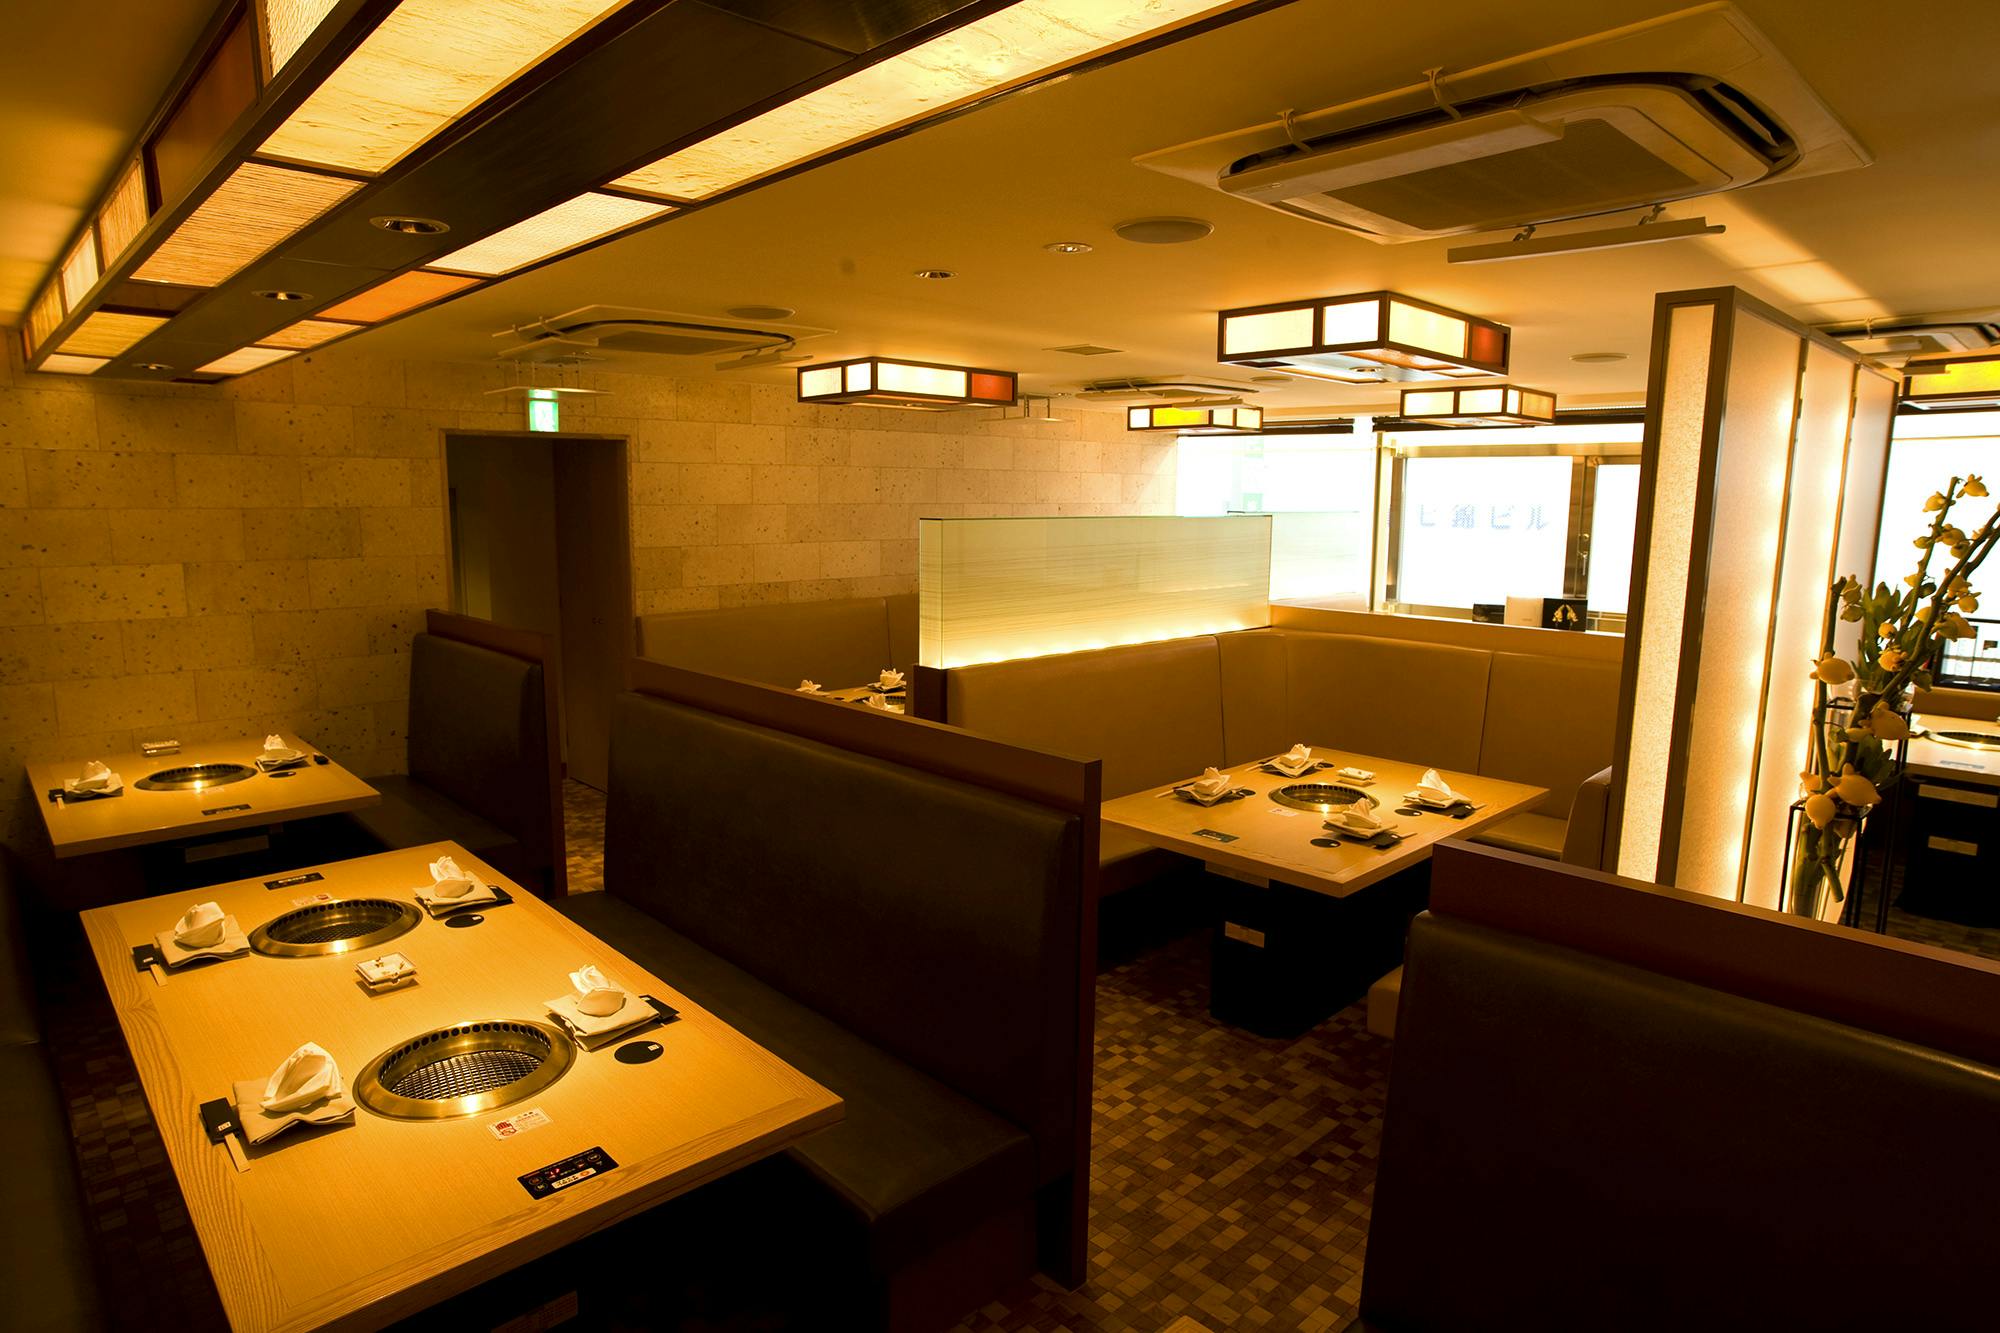 栄ディナー 美味しい焼肉を楽しめる おしゃれなレストラン10選 Okaimonoモール レストラン